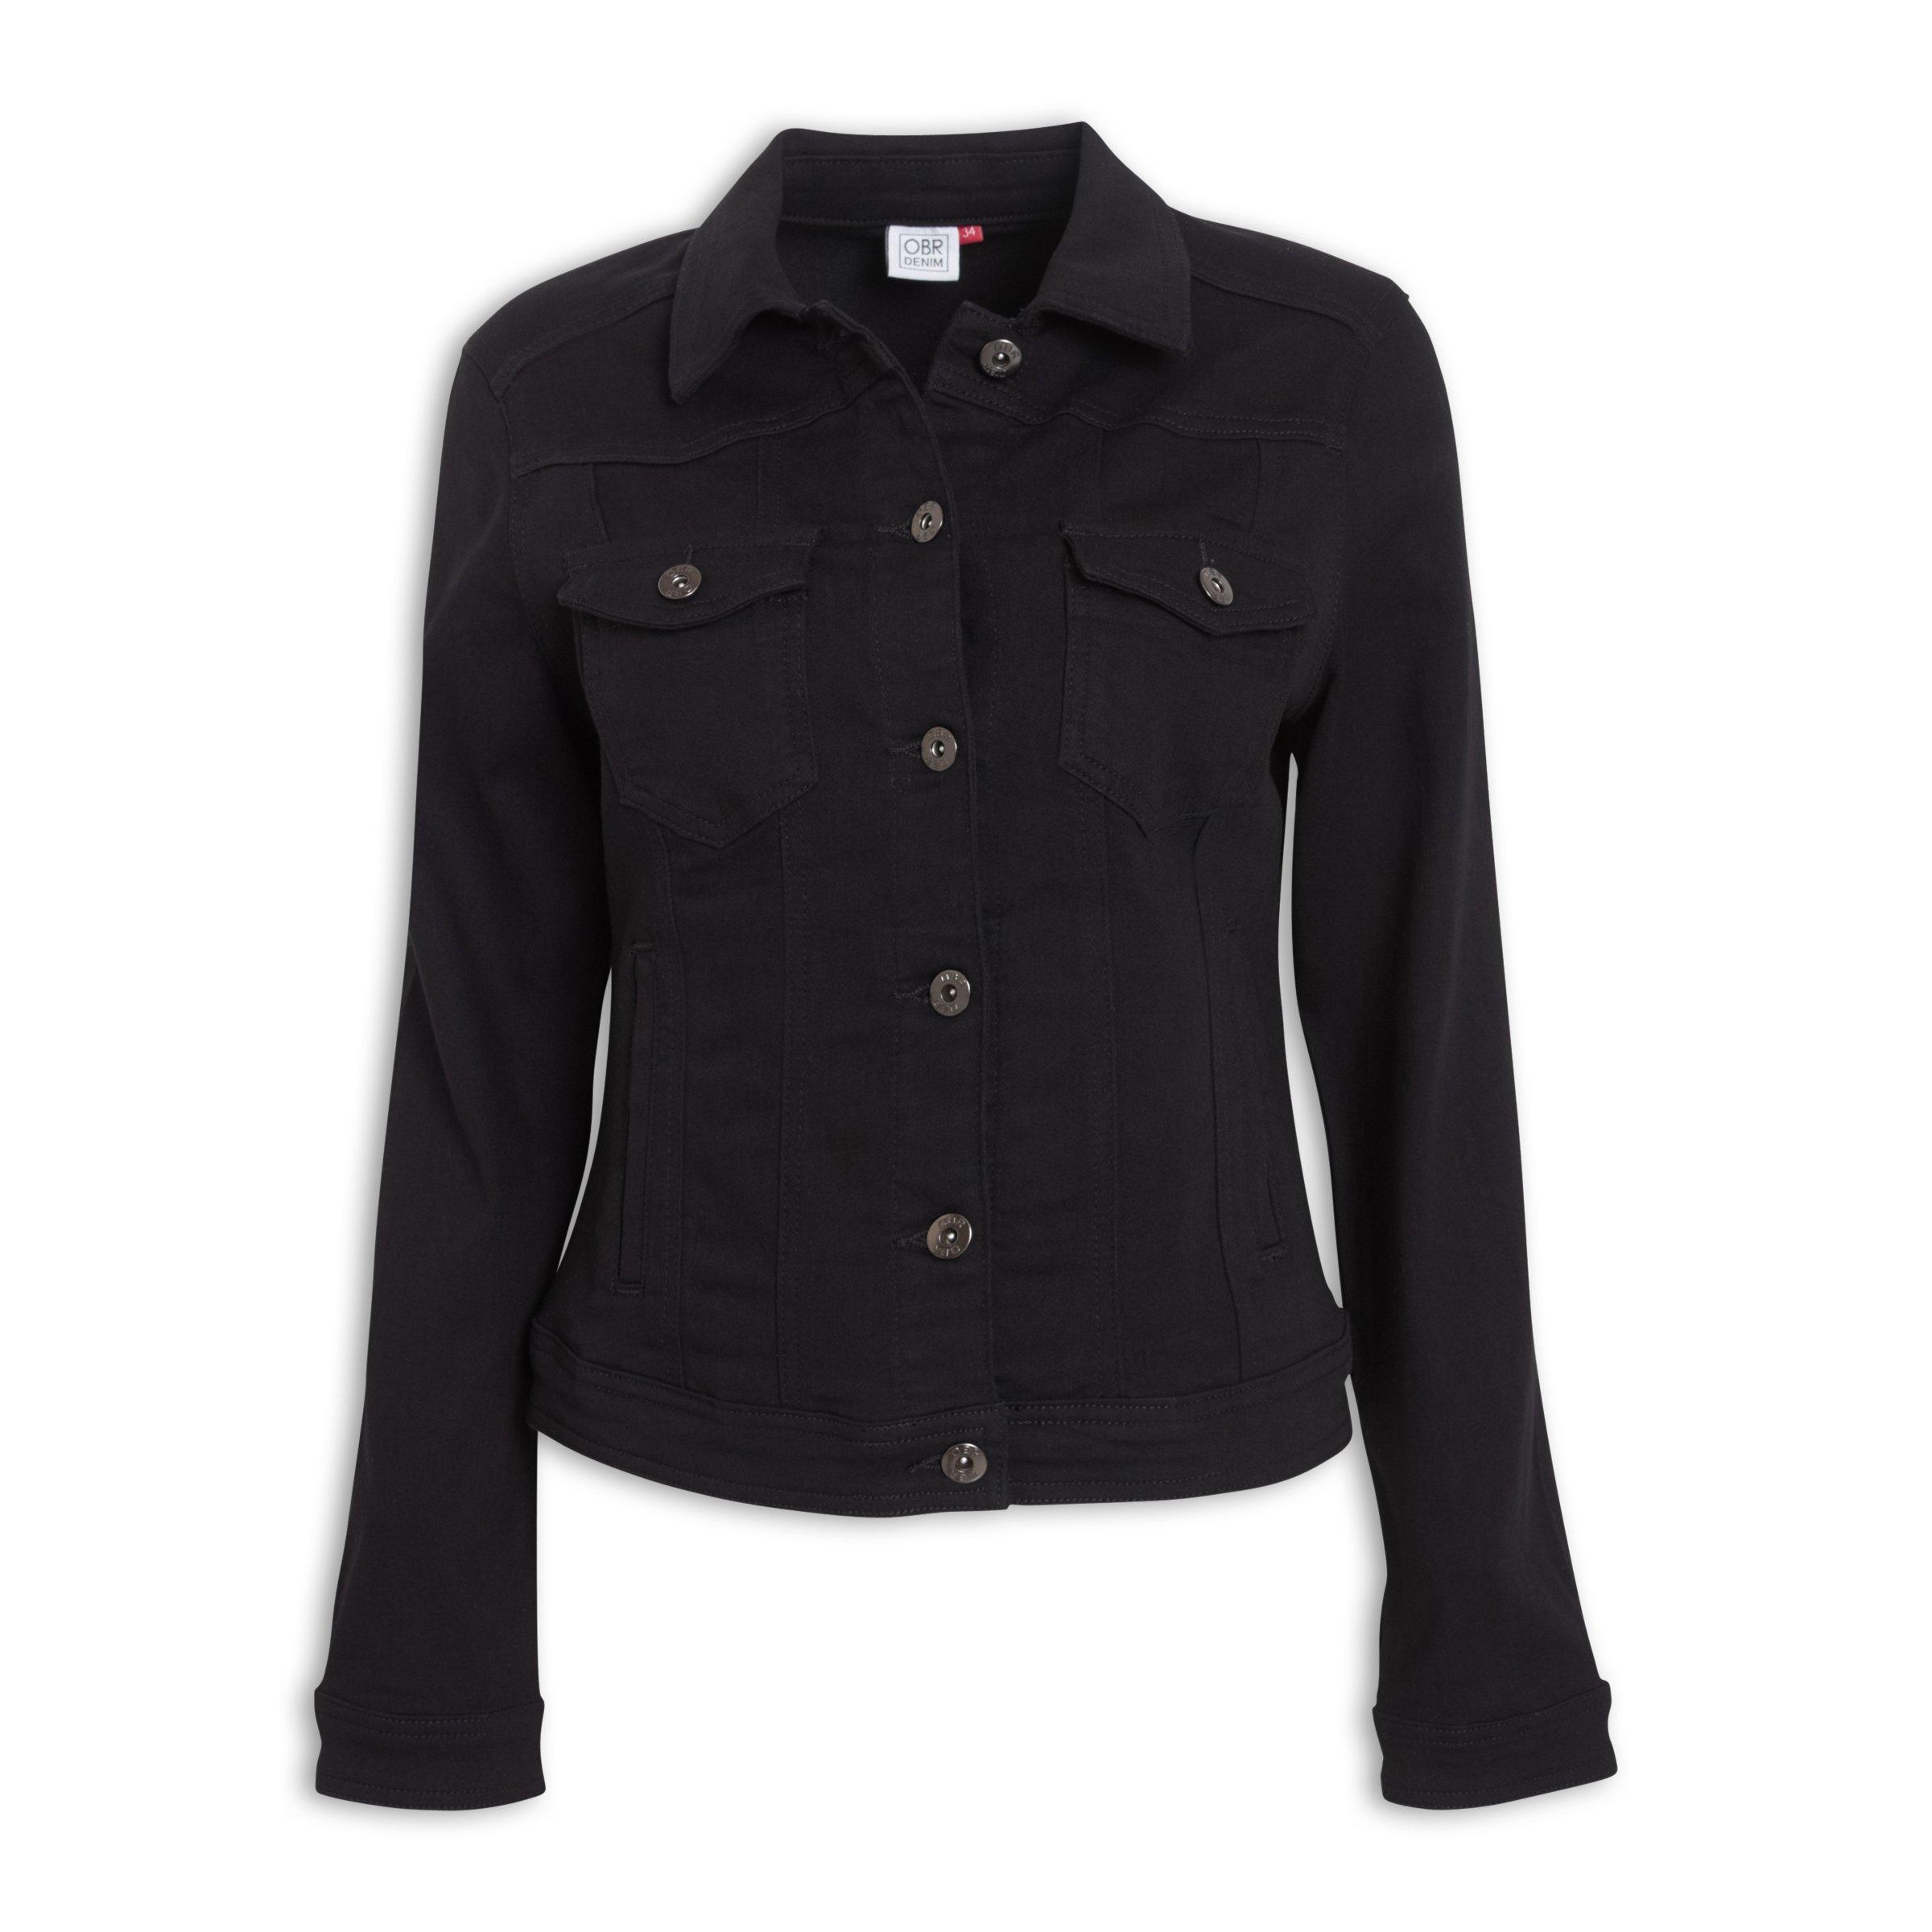 Buy OBR Black Denim Jacket Online | Truworths